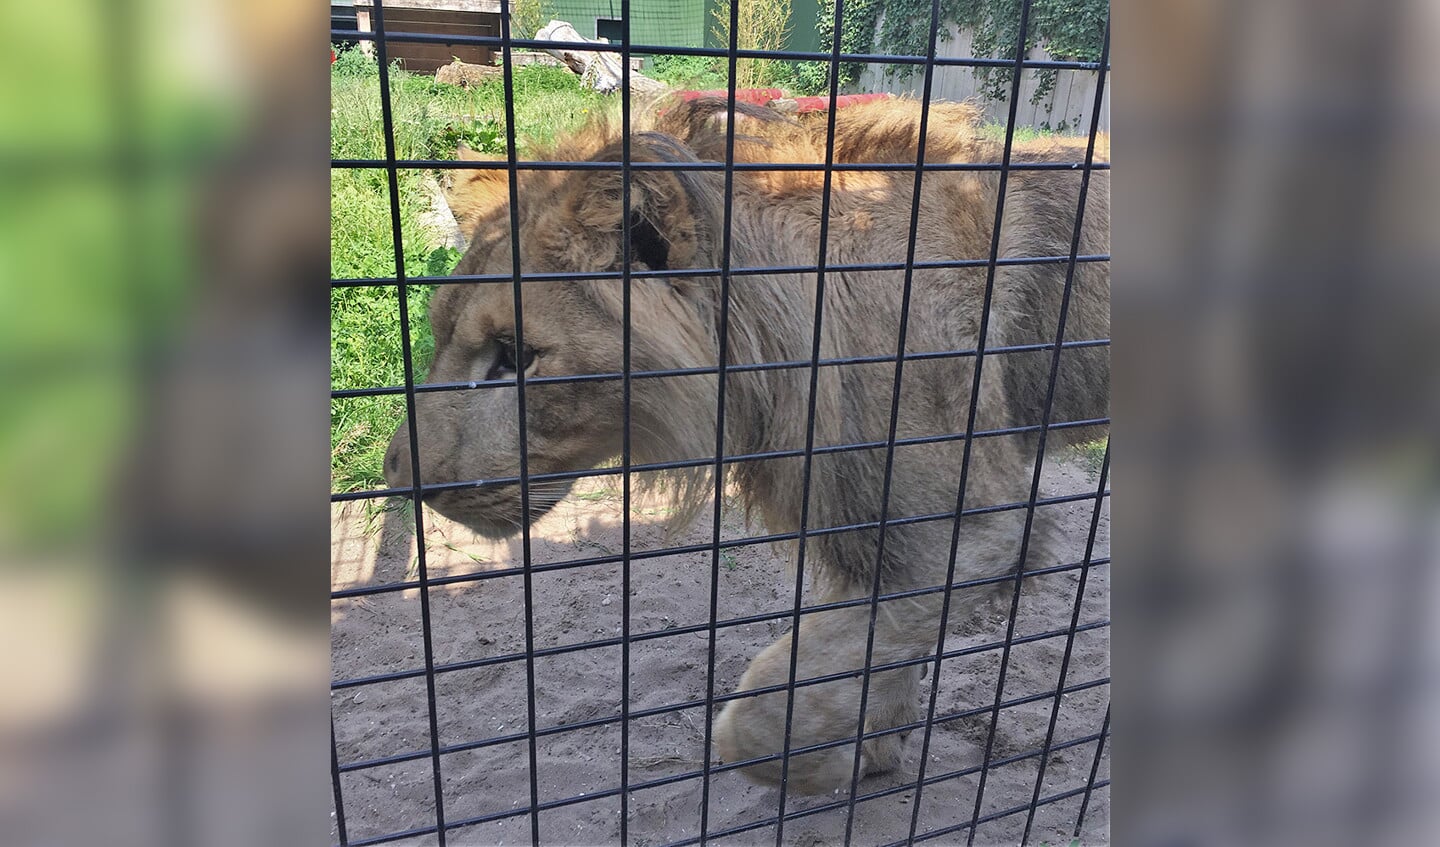 Vondeling Remi is uitgegroeid tot een halfwas leeuw. Het dier werd vorig jaar in een kooitje in een weiland bij Tienhoven gevonden.